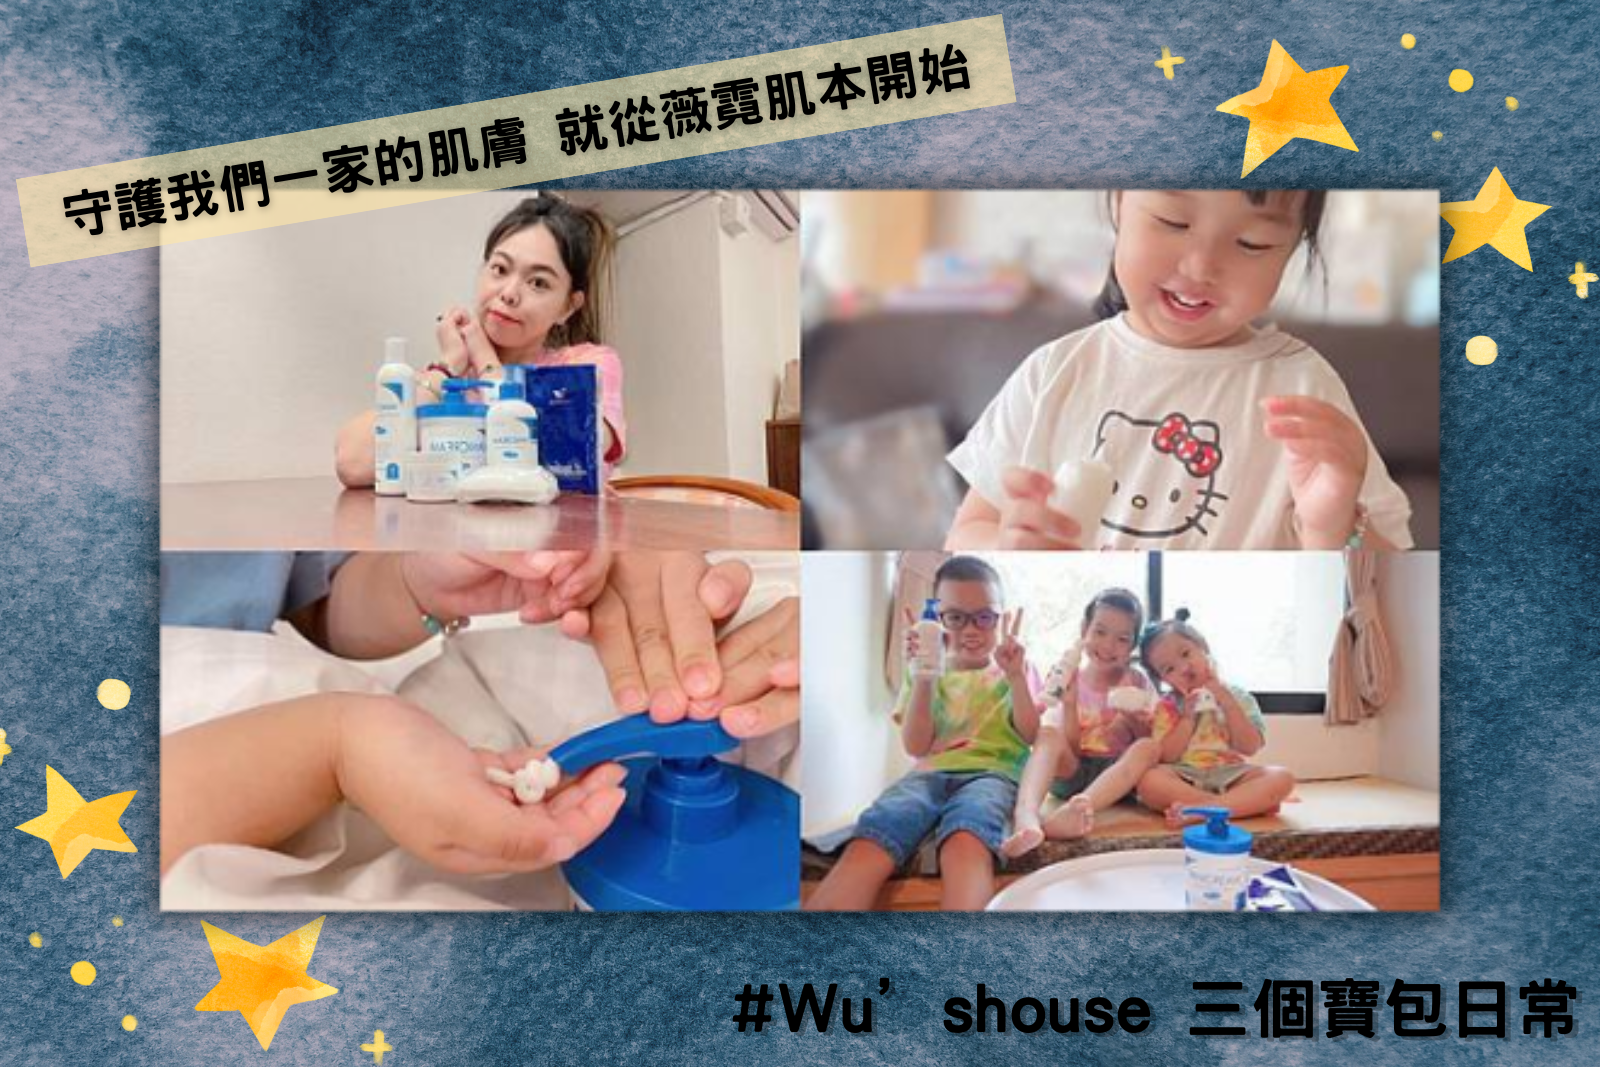 Wu’shouse 三個寶包日常拍攝Vanicream薇霓肌本產品介紹的組合照